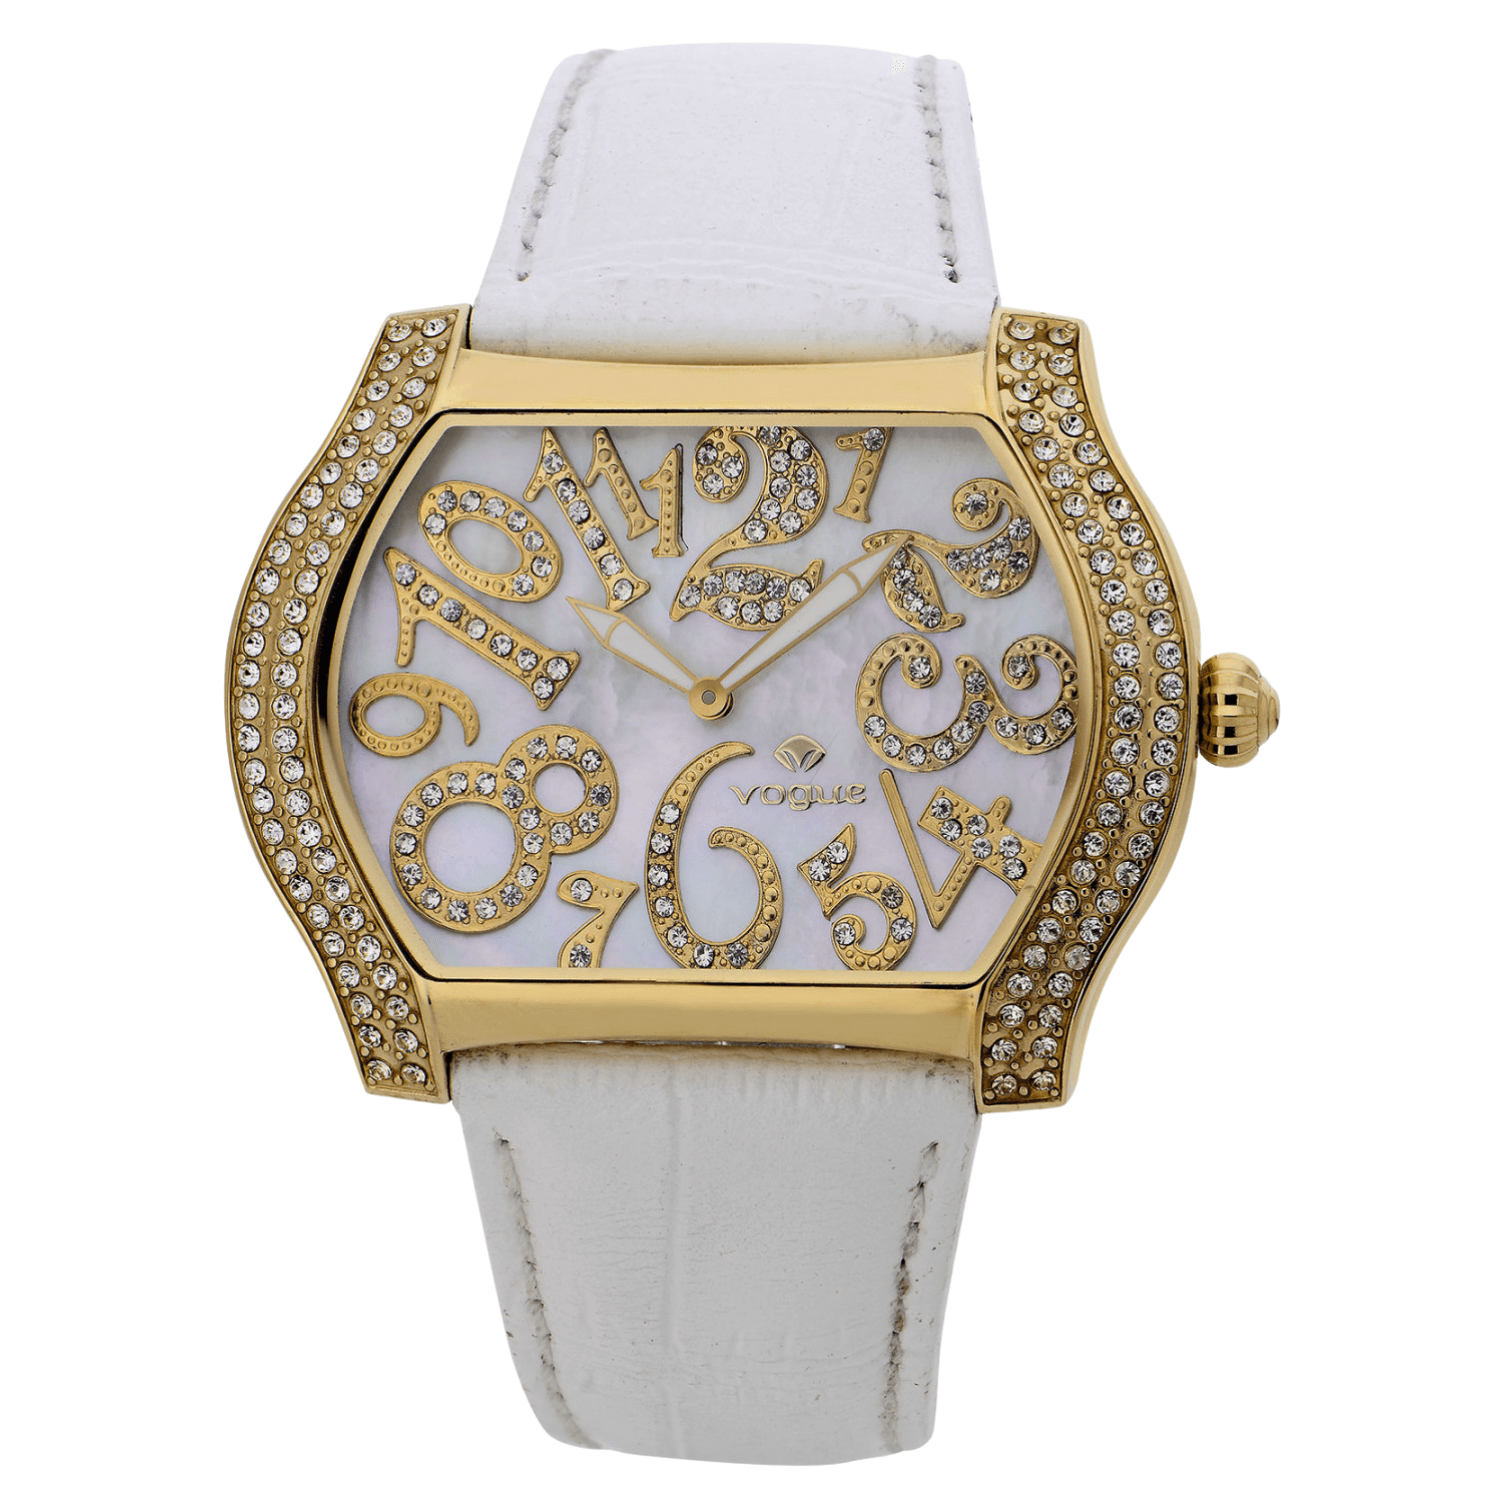 Προσφορά ρολόι Vogue Vintage με άσπρο δερμάτινο λουράκι και άσπρο τετράγωνο καντράν με ζιργκόν.